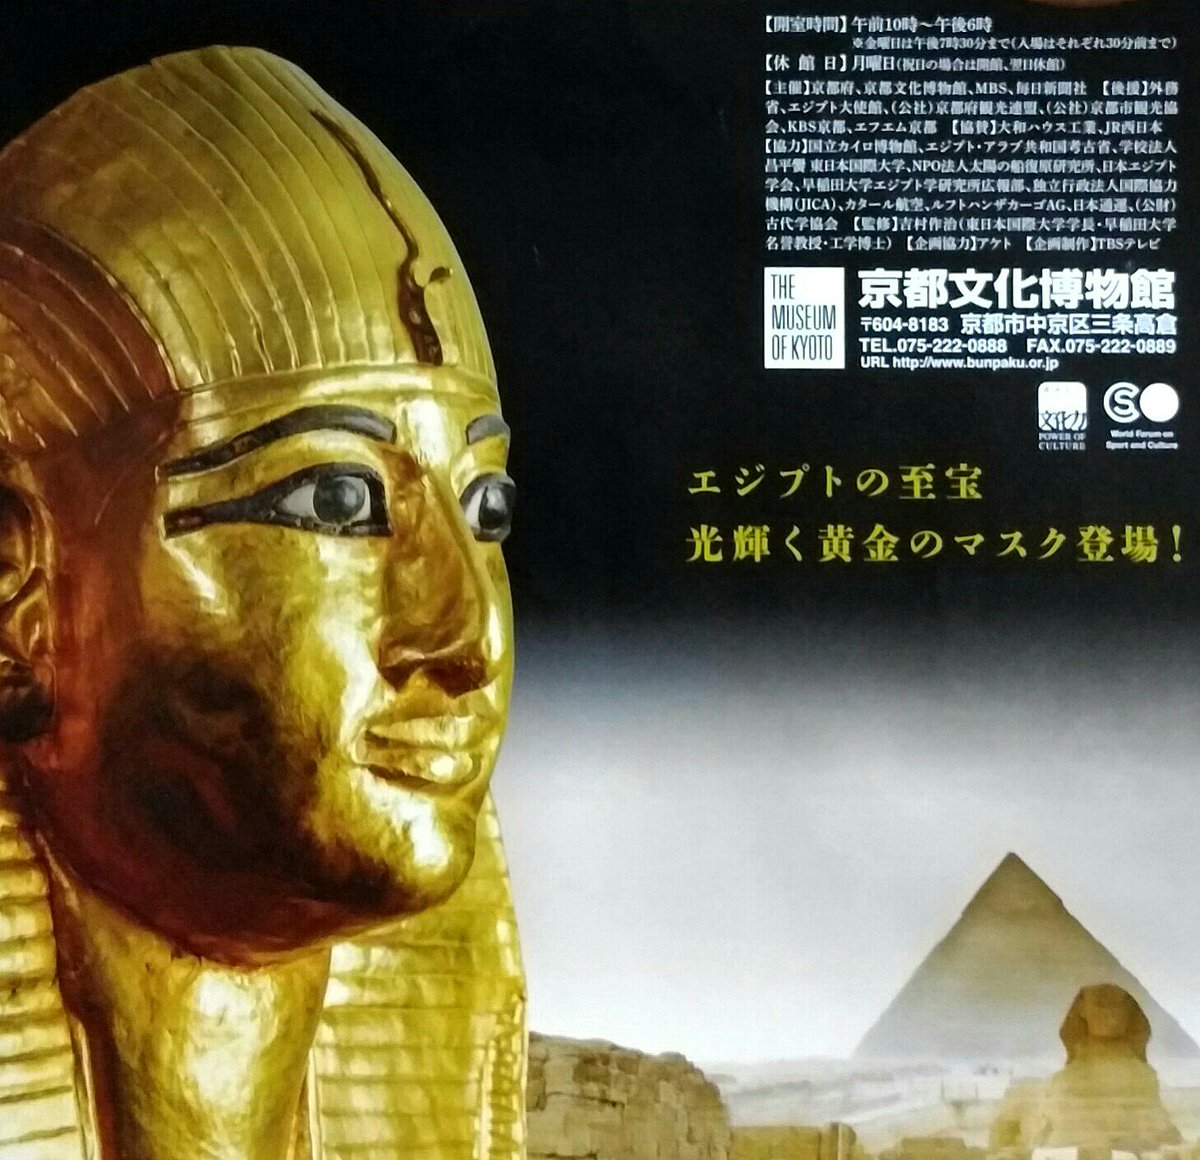 Hikari N Auf Twitter 京都文化博物館 の 黄金のファラオと大ピラミッド展 現地で クフ王のピラミッドや ツタンカーメンの黄金マスクを 観た感動が蘇る 大英博物館 古代エジプト スフィンクス ラバーダック が 売ってたので買っちゃった